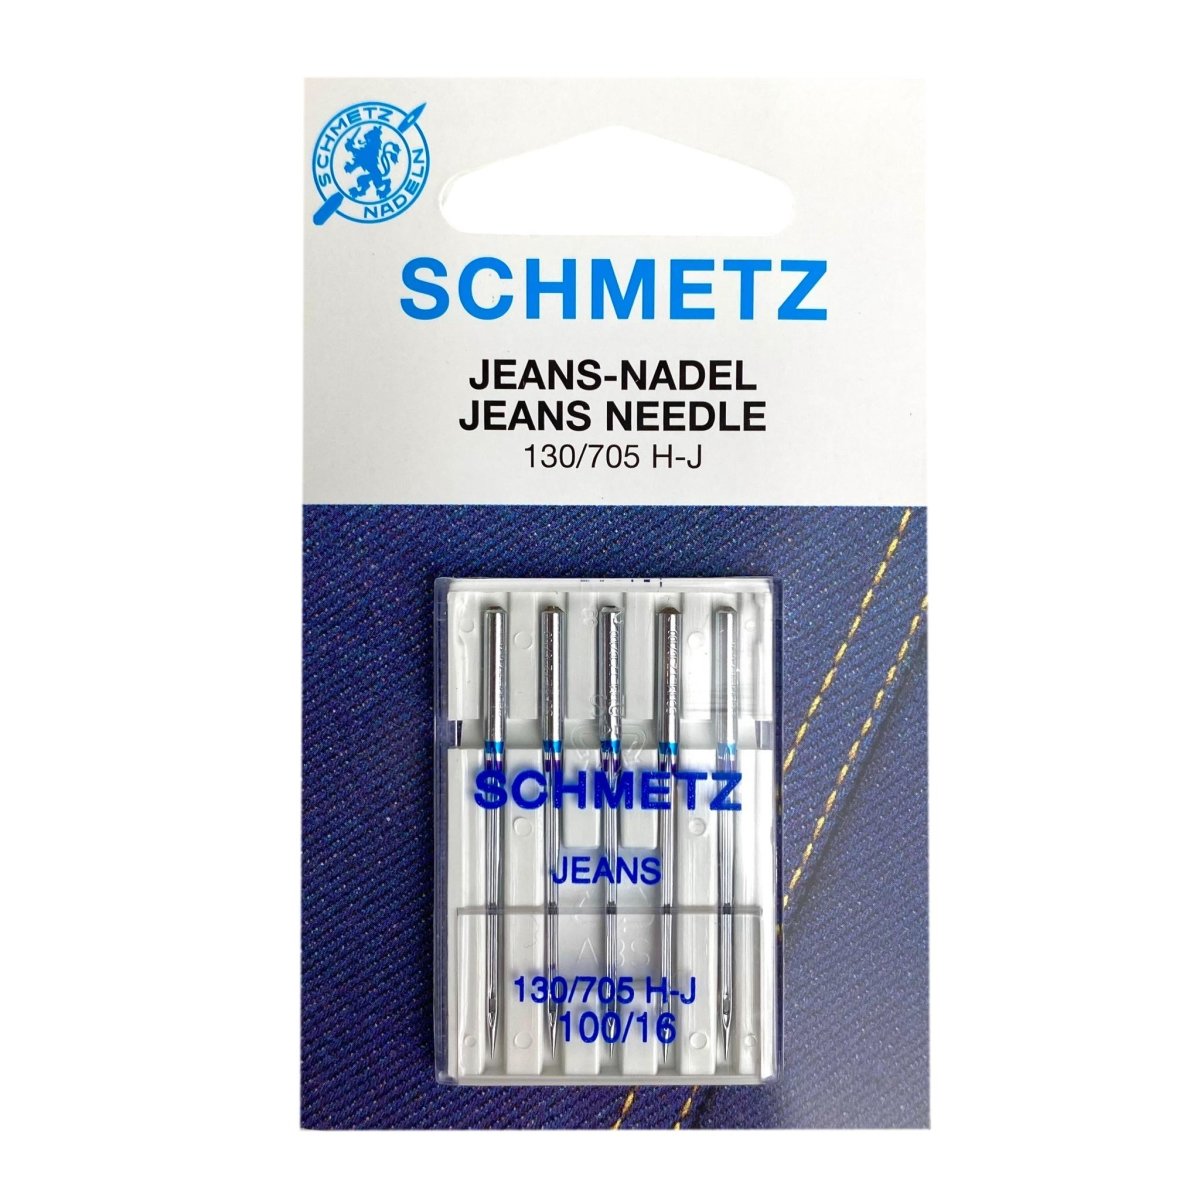 Schmetz - Jeans Sewing Machine Needles